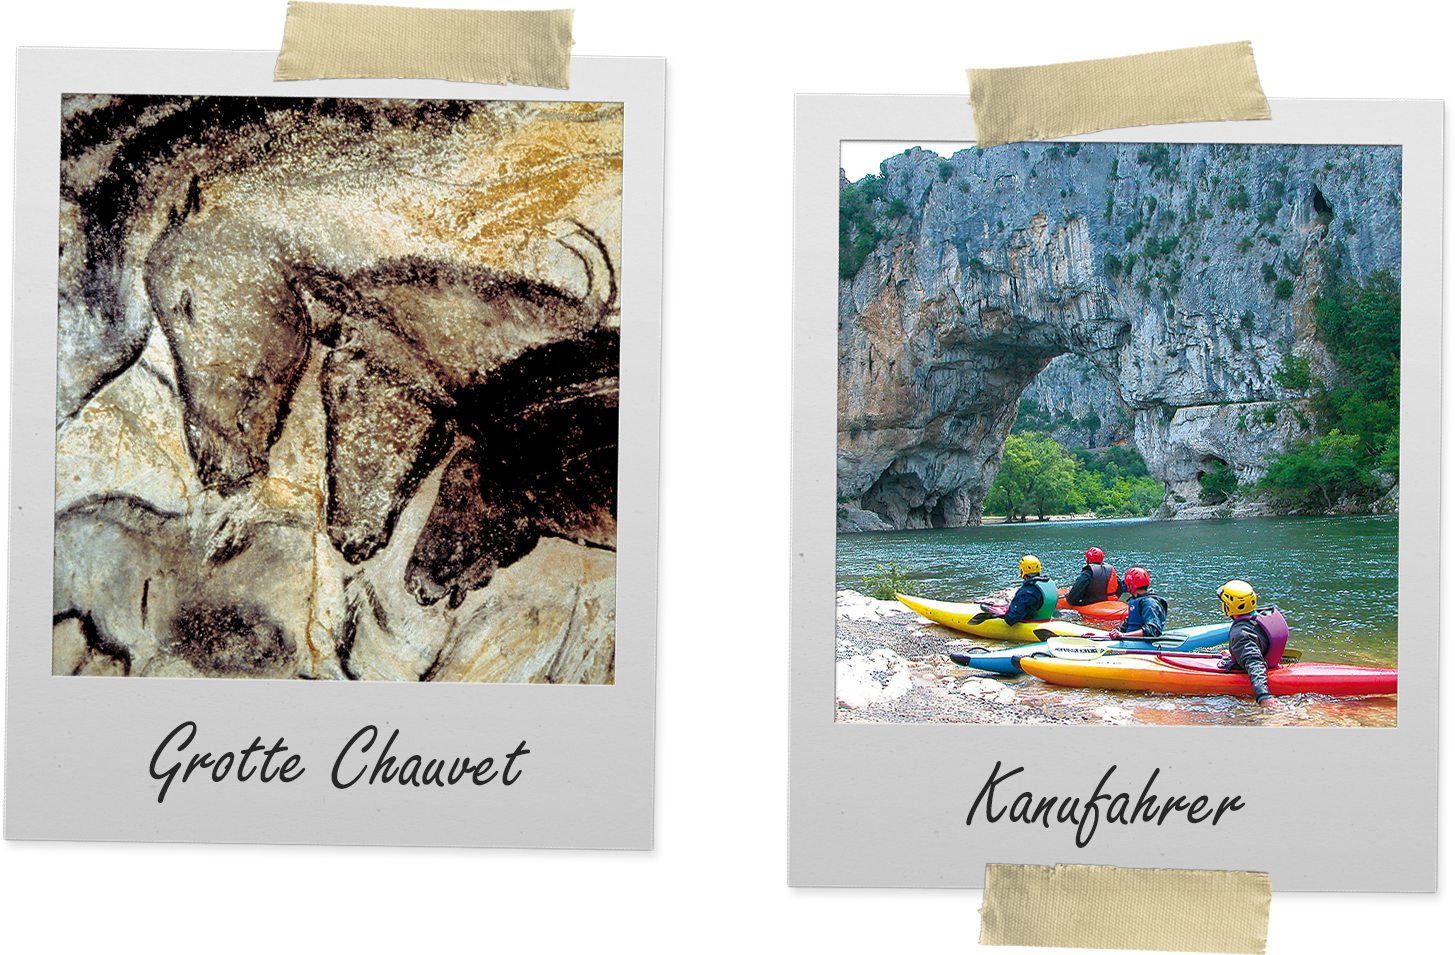 Standortwanderung mit Besuch von Grotte Chauvet und Pont d'Arc